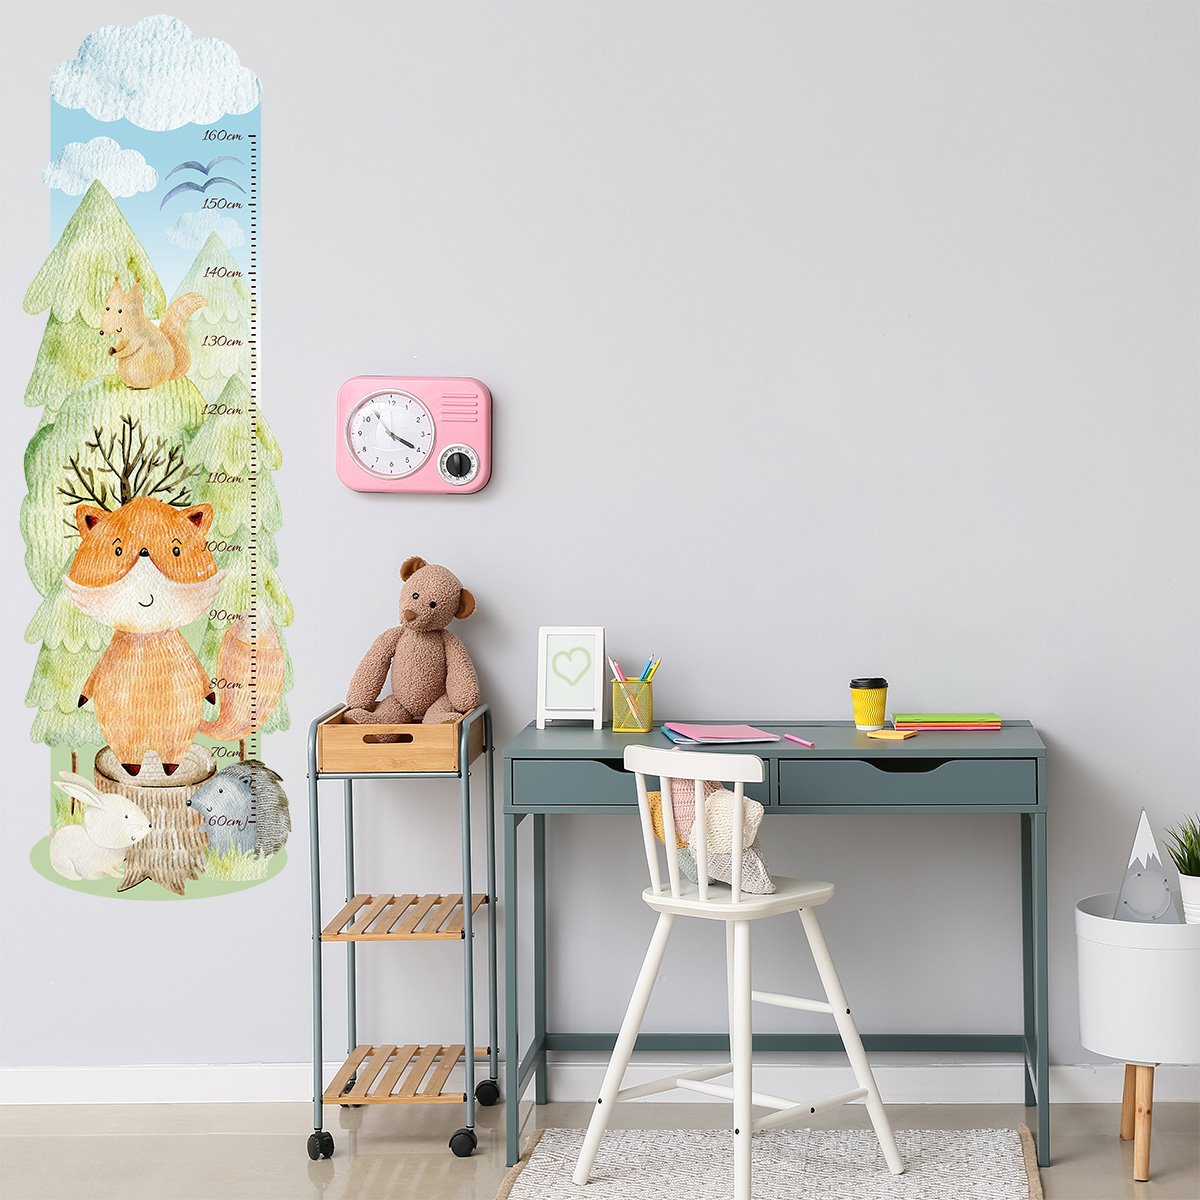 Naklejki na ścianę dla dzieci miarka wzrostu - zielony las i zwierzęta leśne naklejona przy biurku w pokoju małej dziewczynki